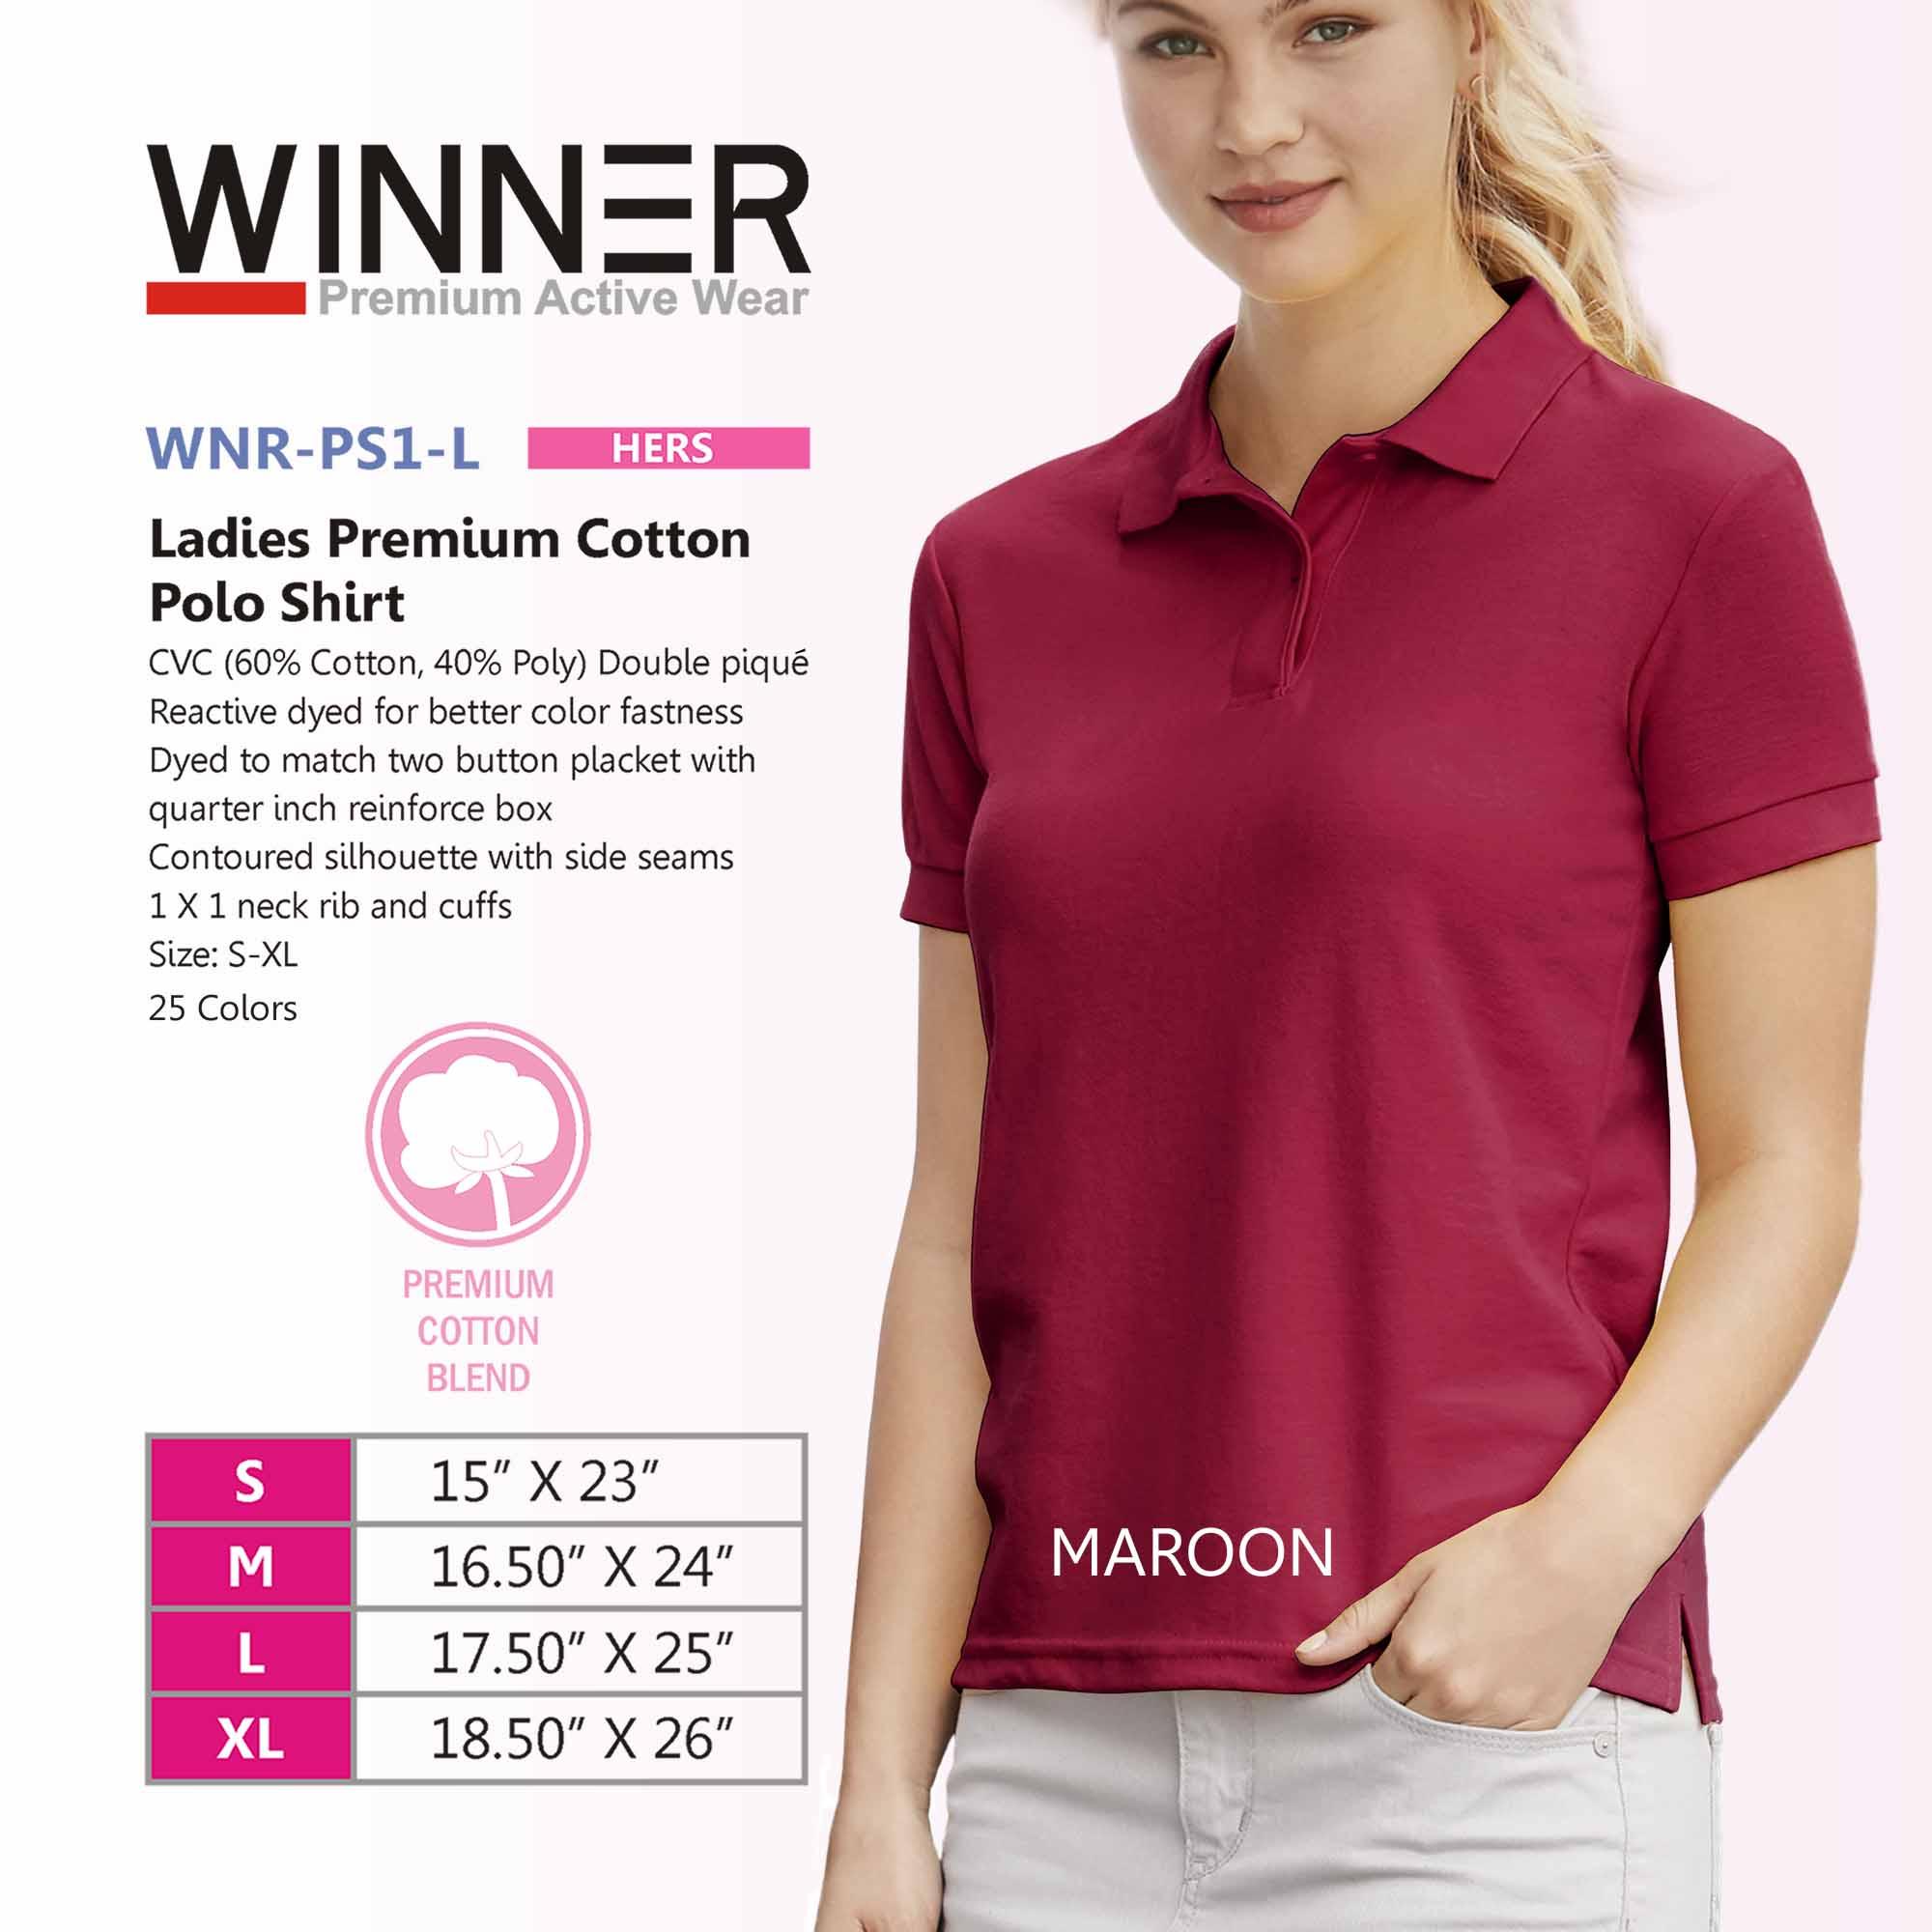 Winner Polo Shirt Size Chart